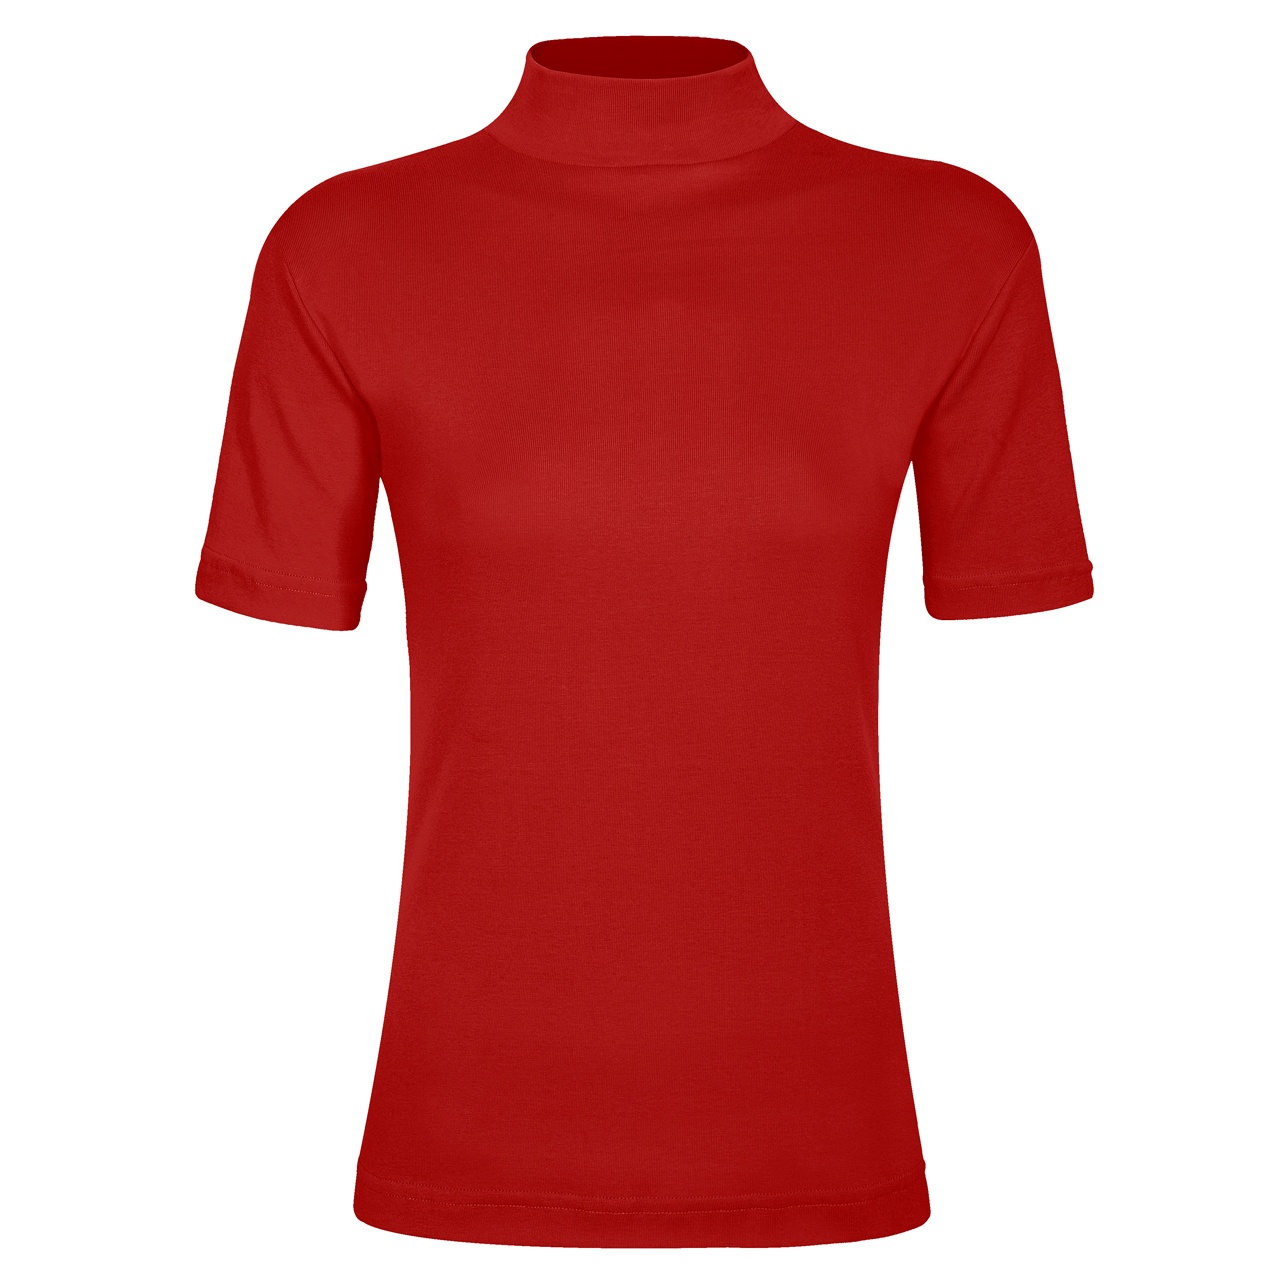 تی شرت زنانه ساروک مدل TZY5cm16 رنگ قرمز